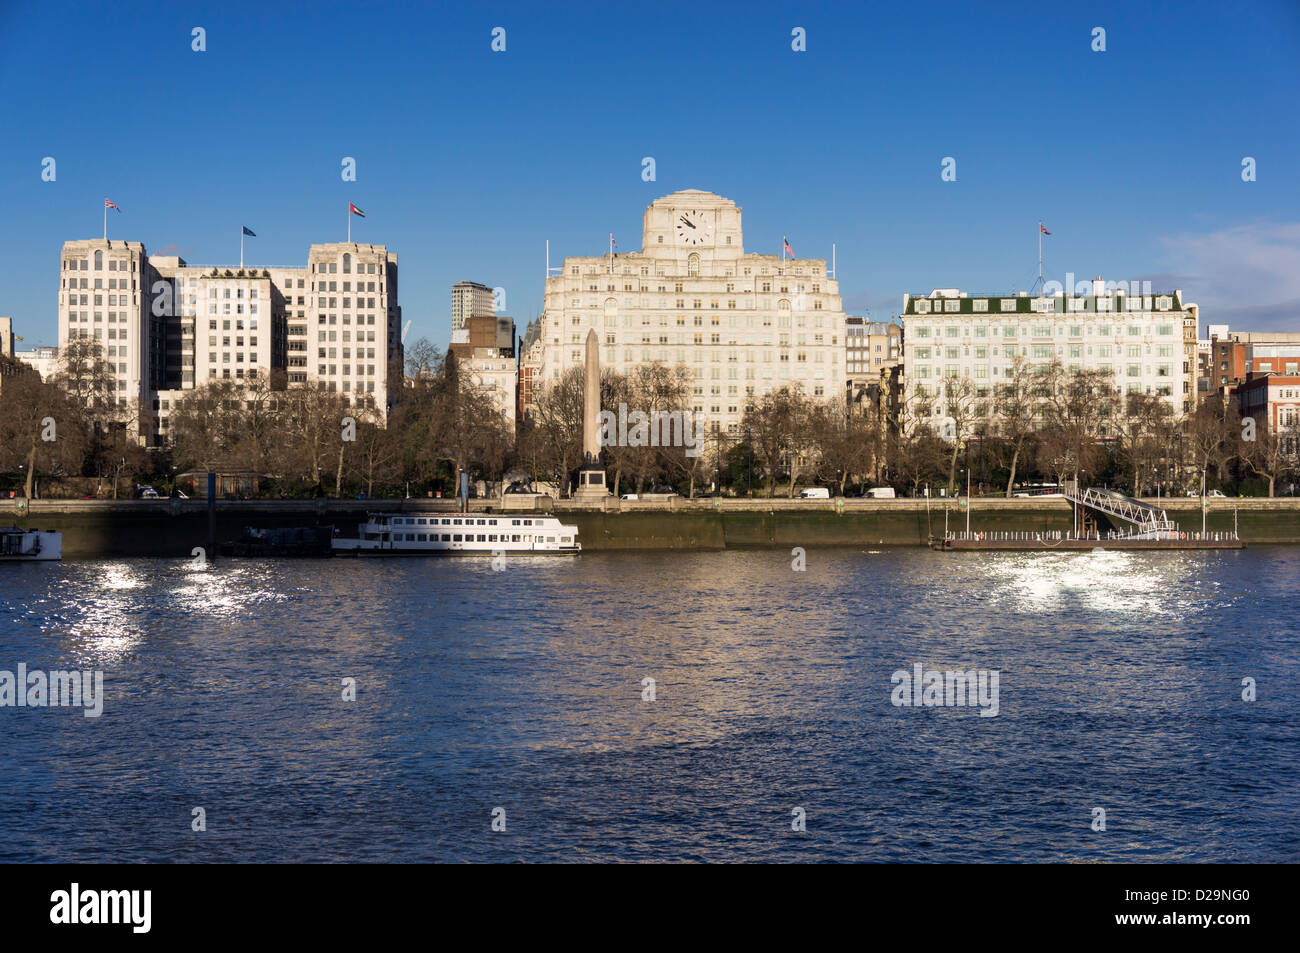 Embankment, London, Regno Unito - edifici L a R: L'Adelphi, Shell Mex House e Savoy Hotel Foto Stock